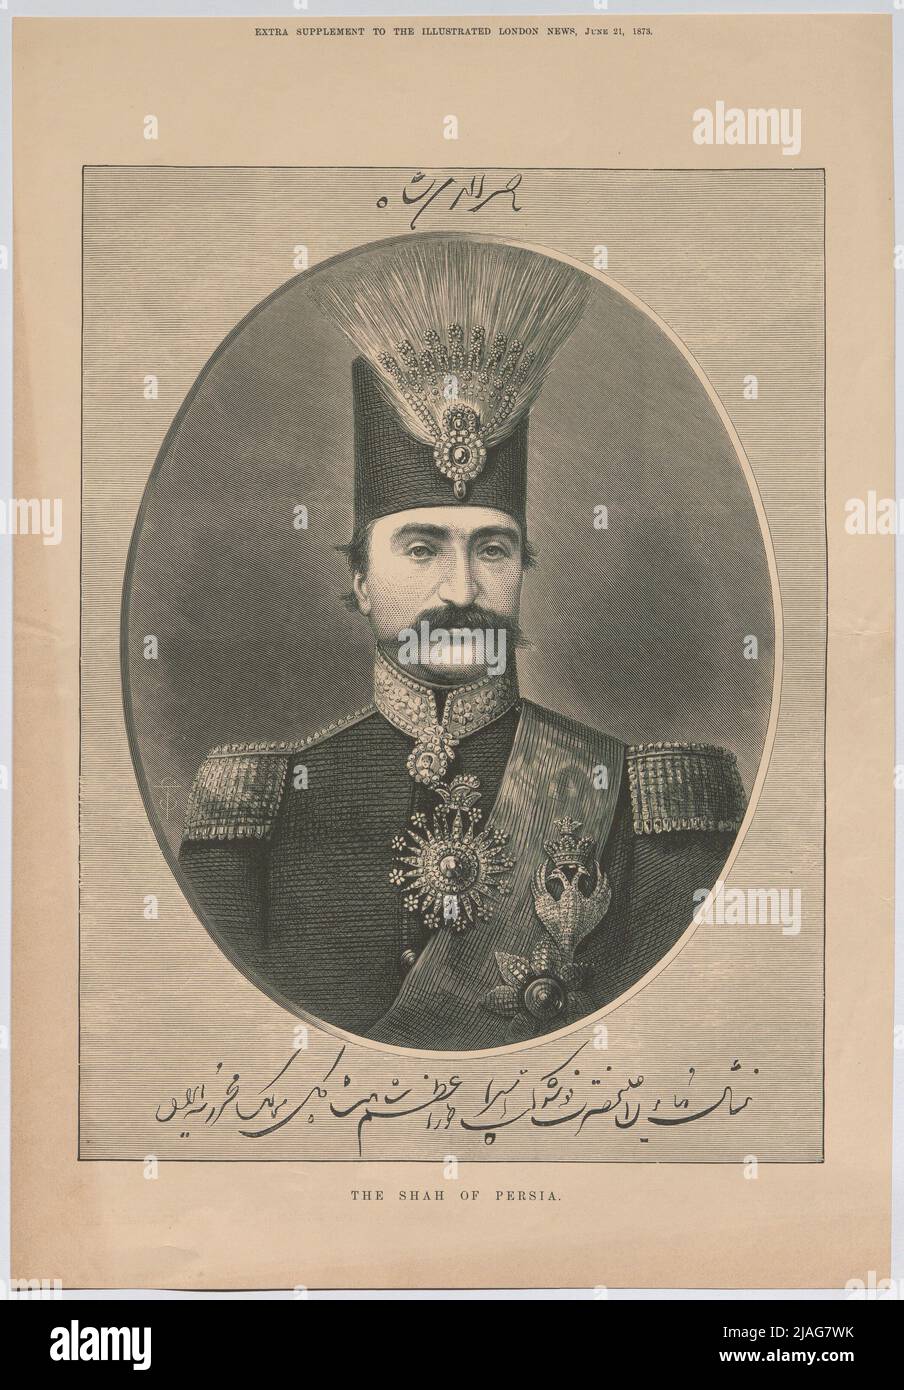 Le Shah de Perse. '. Naser ad-DIN, Shah of Persia (du « supplément supplémentaire de The Illustrated London News »). Inconnu Banque D'Images